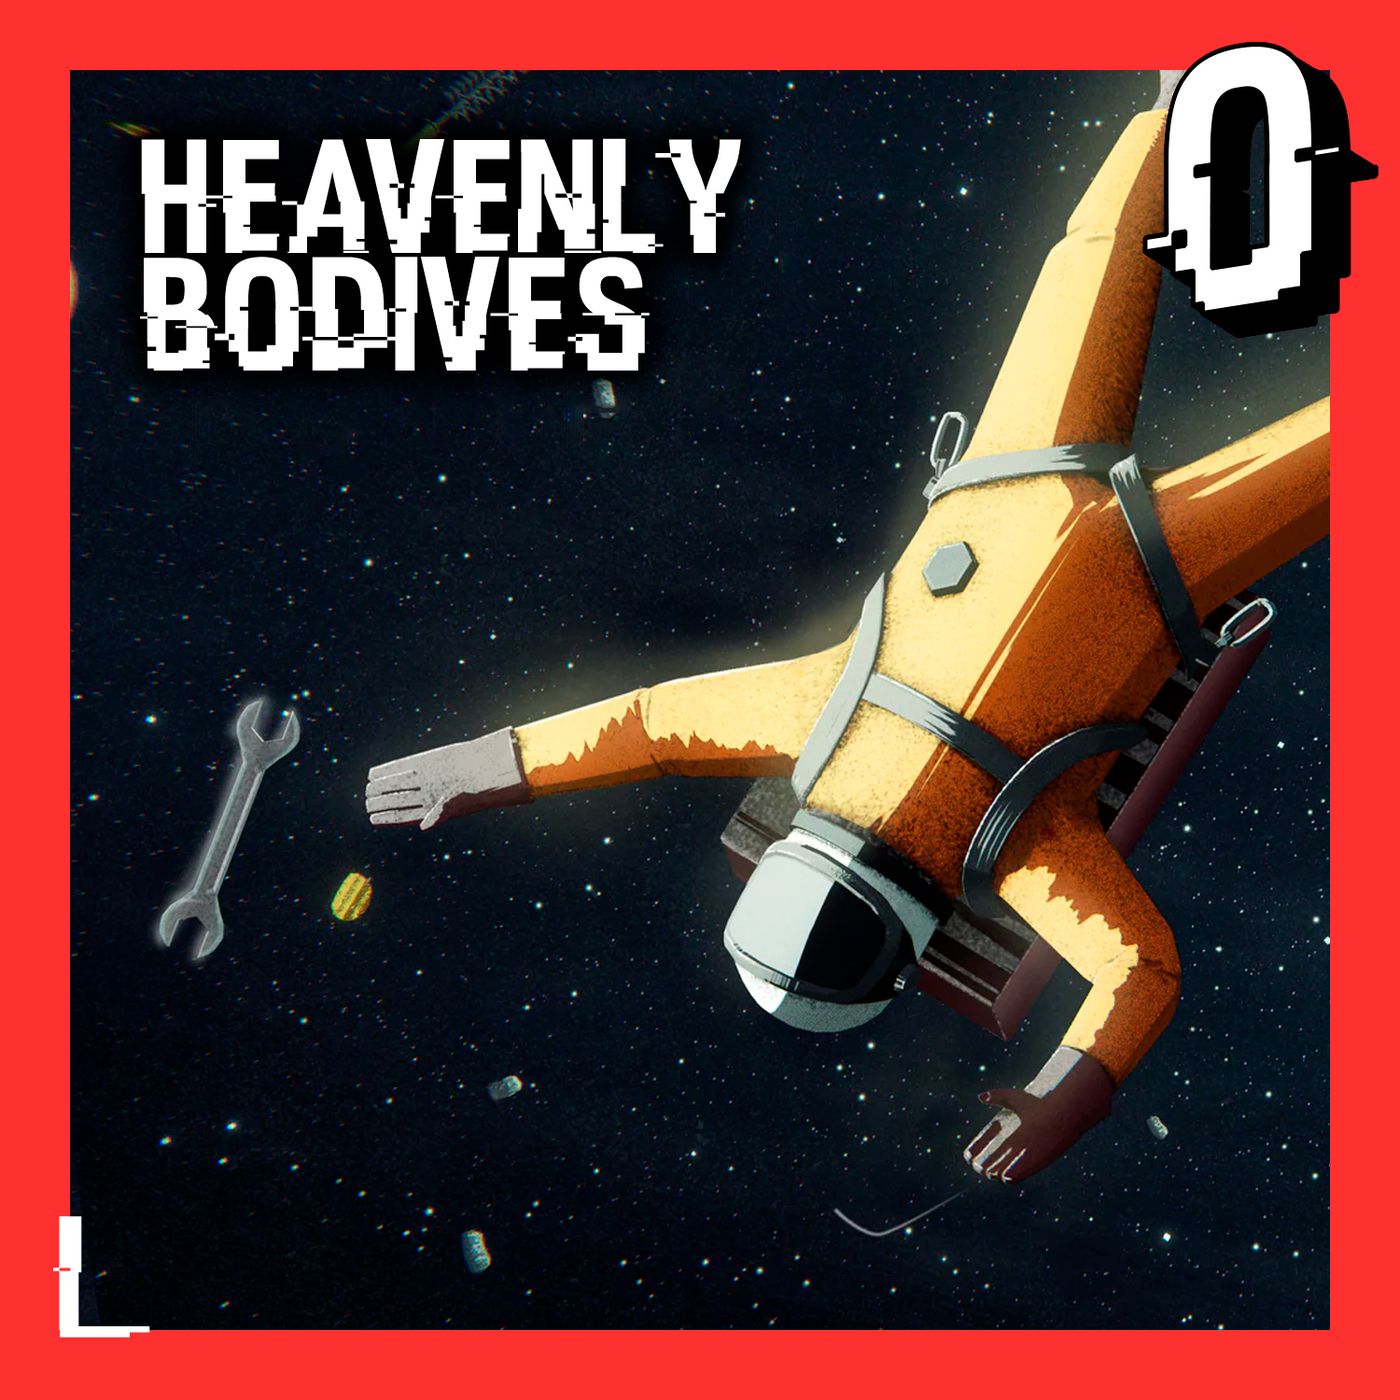 46- Heavenly Bodies: Confundir arriba con abajo